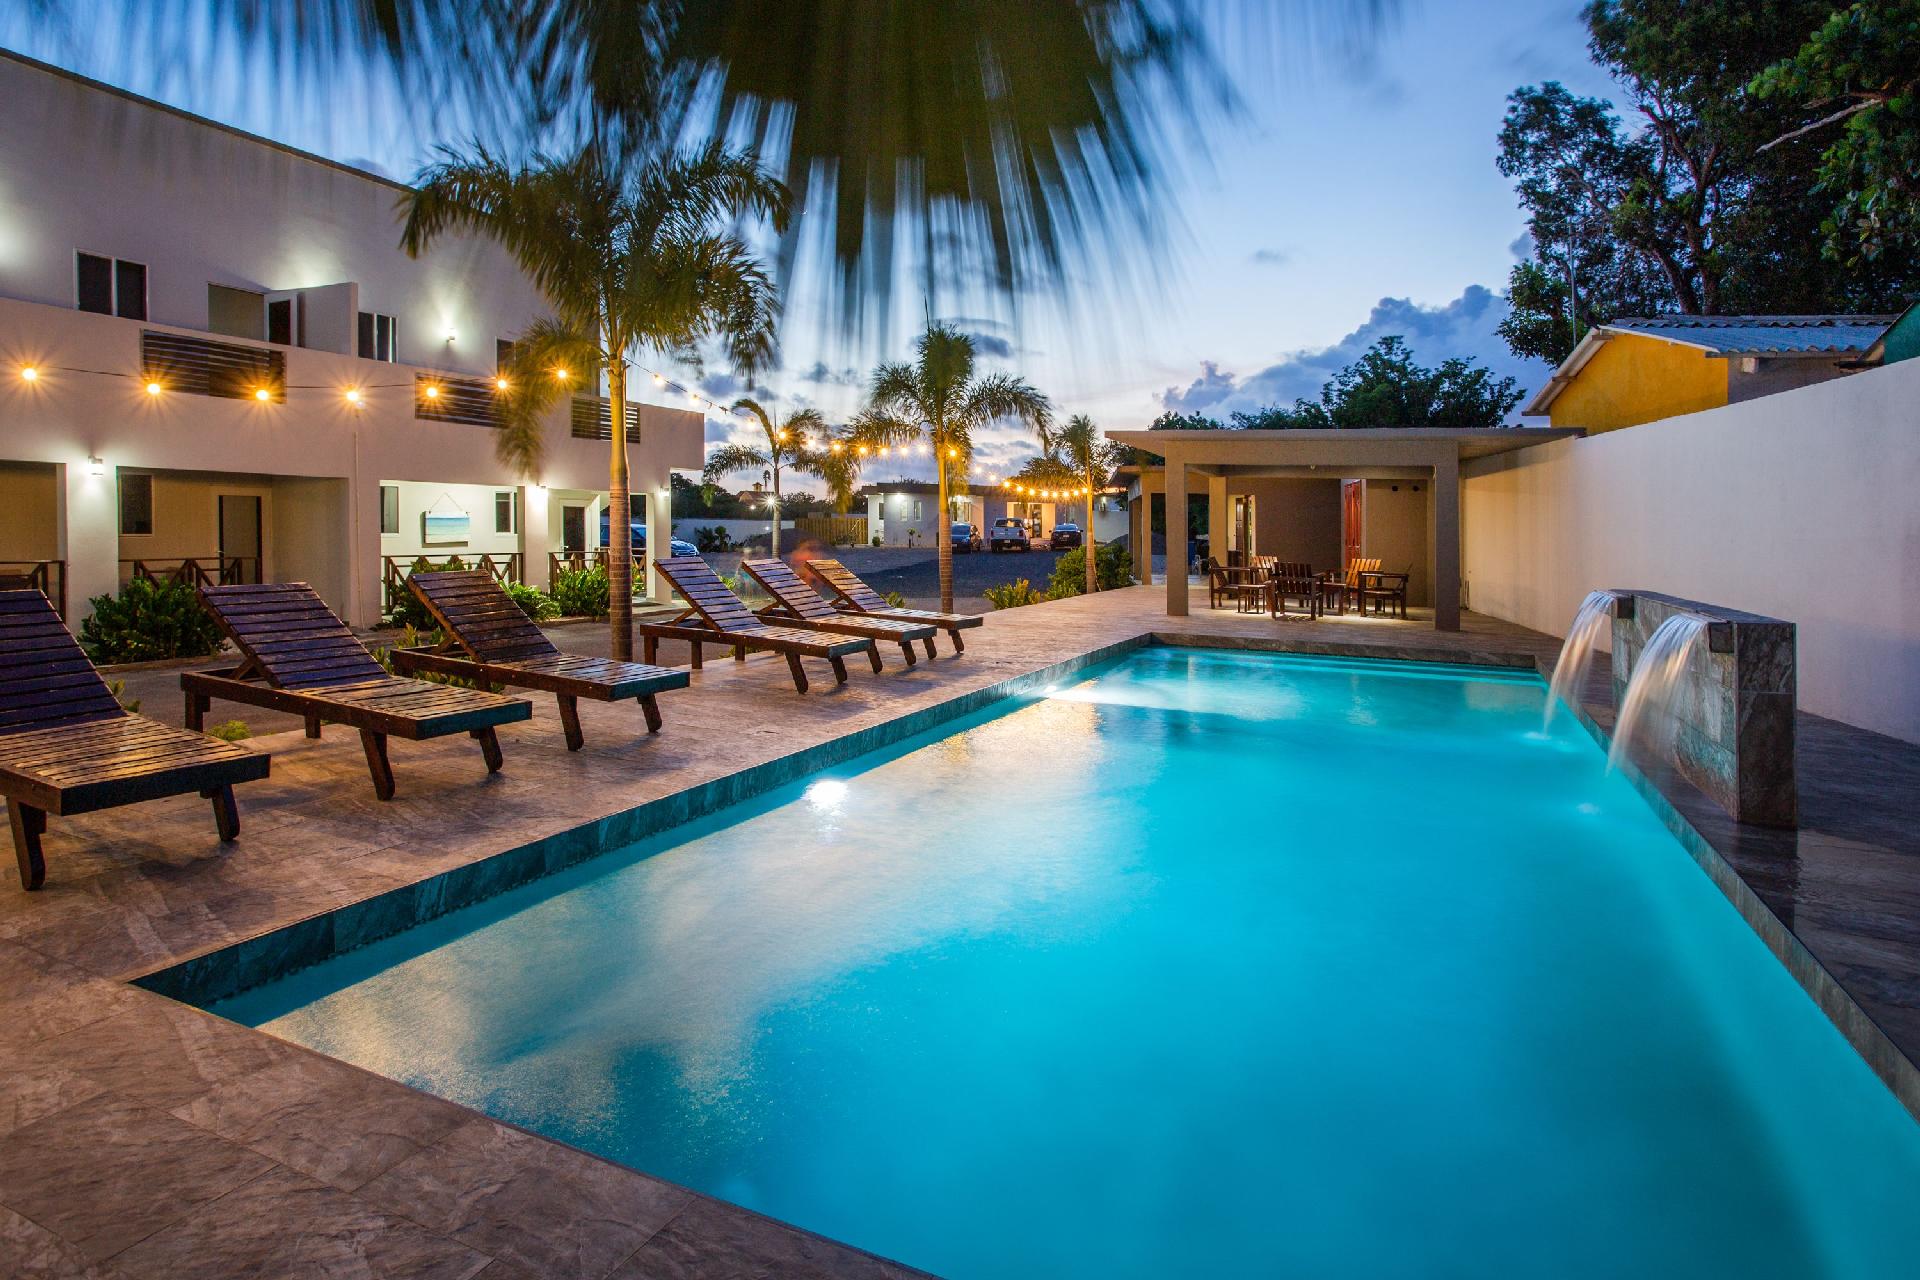 Ferienwohnung für 4 Personen ca. 80 m² i  in Mittelamerika und Karibik